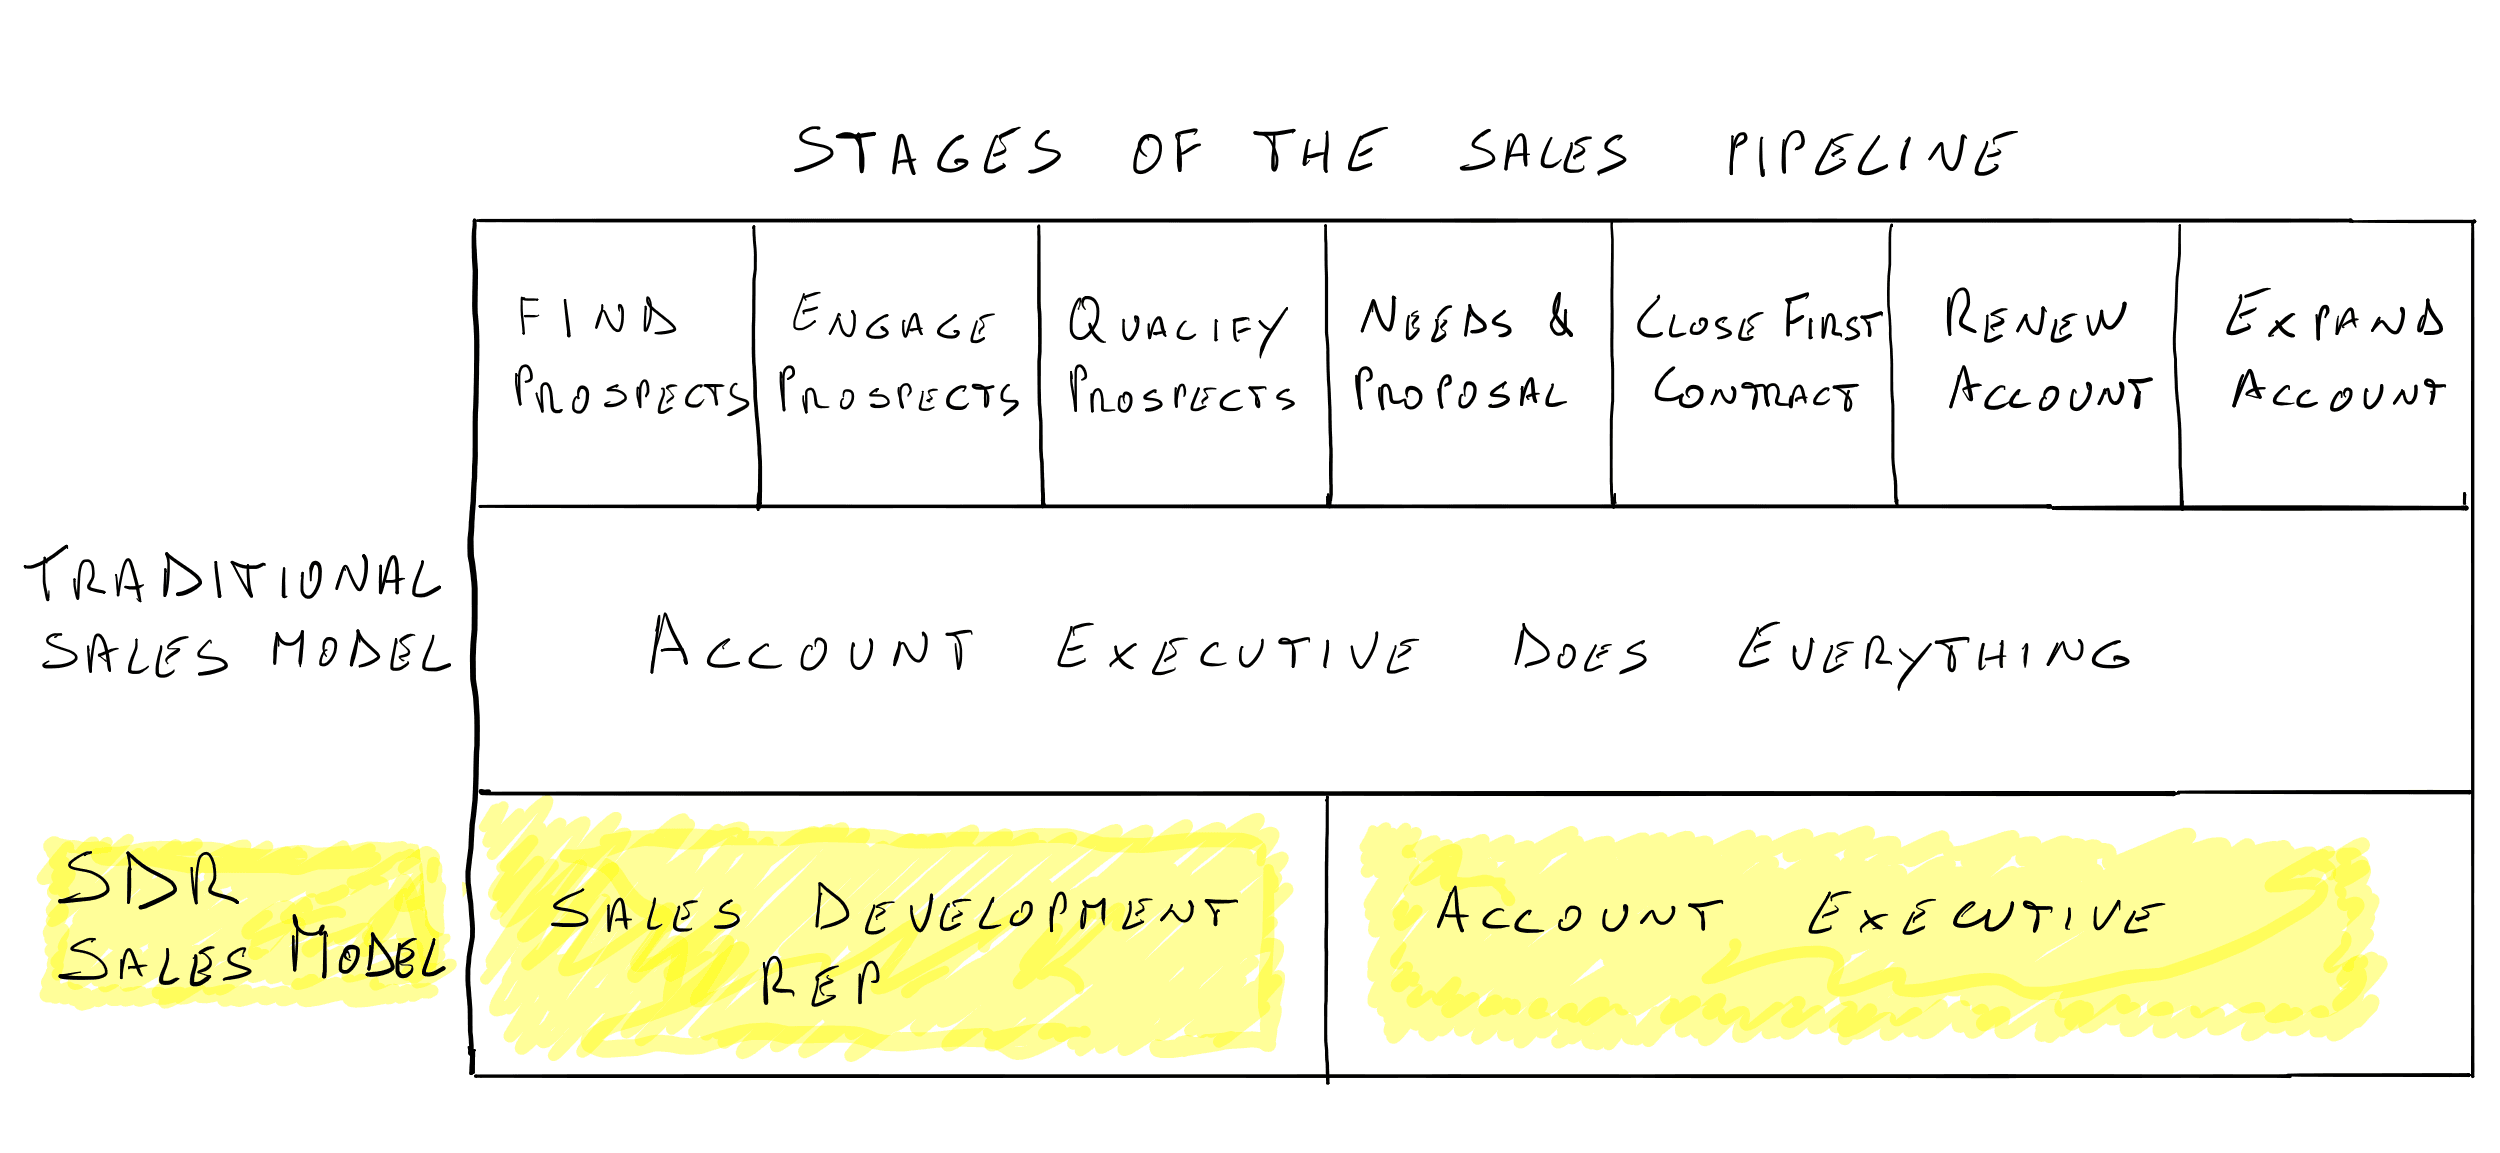 SDR Sales Model